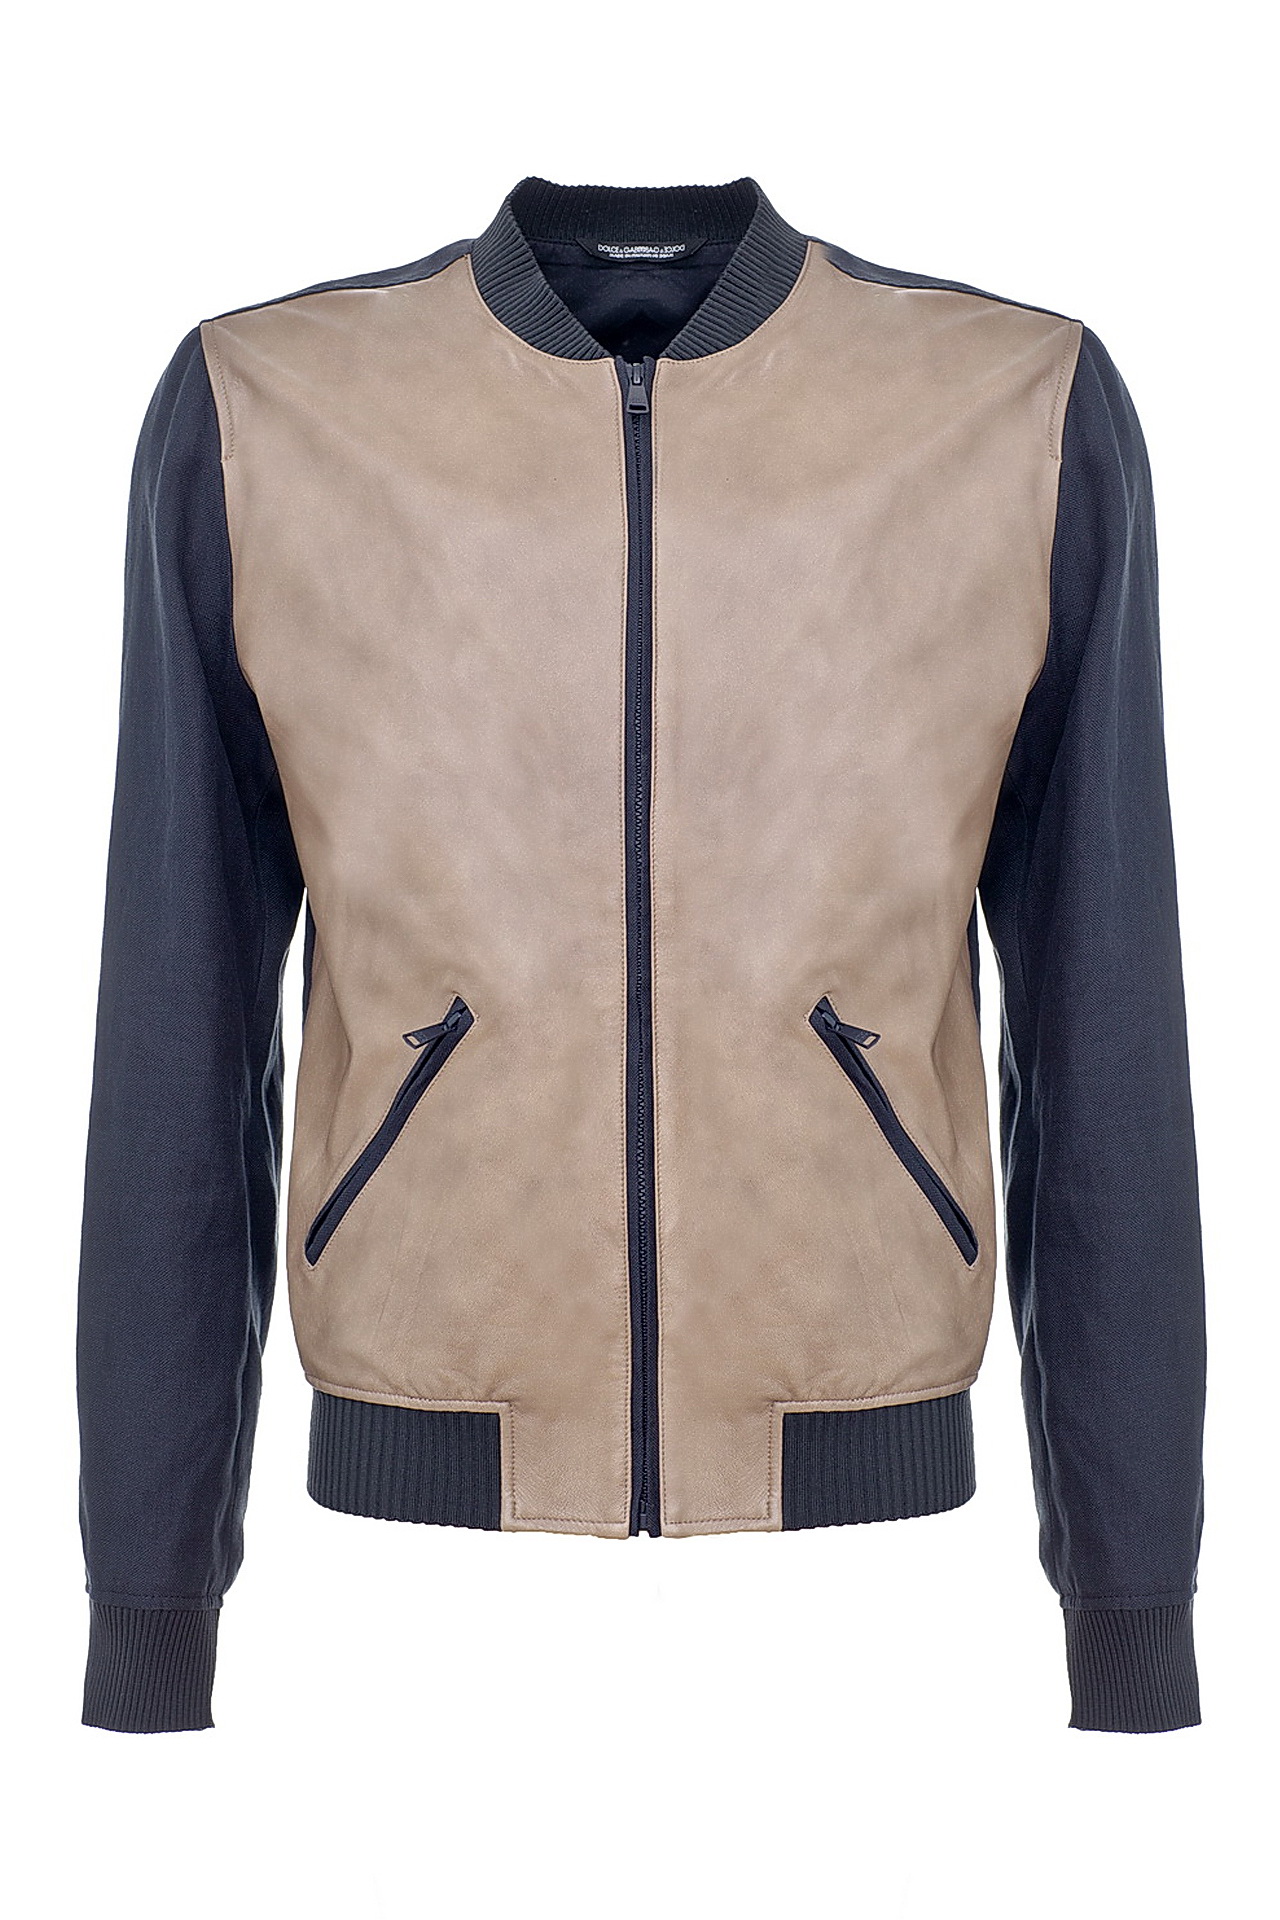 Одежда мужская Куртка DOLCE & GABBANA (G9W45TG9P6/1500). Купить за 39950 руб.